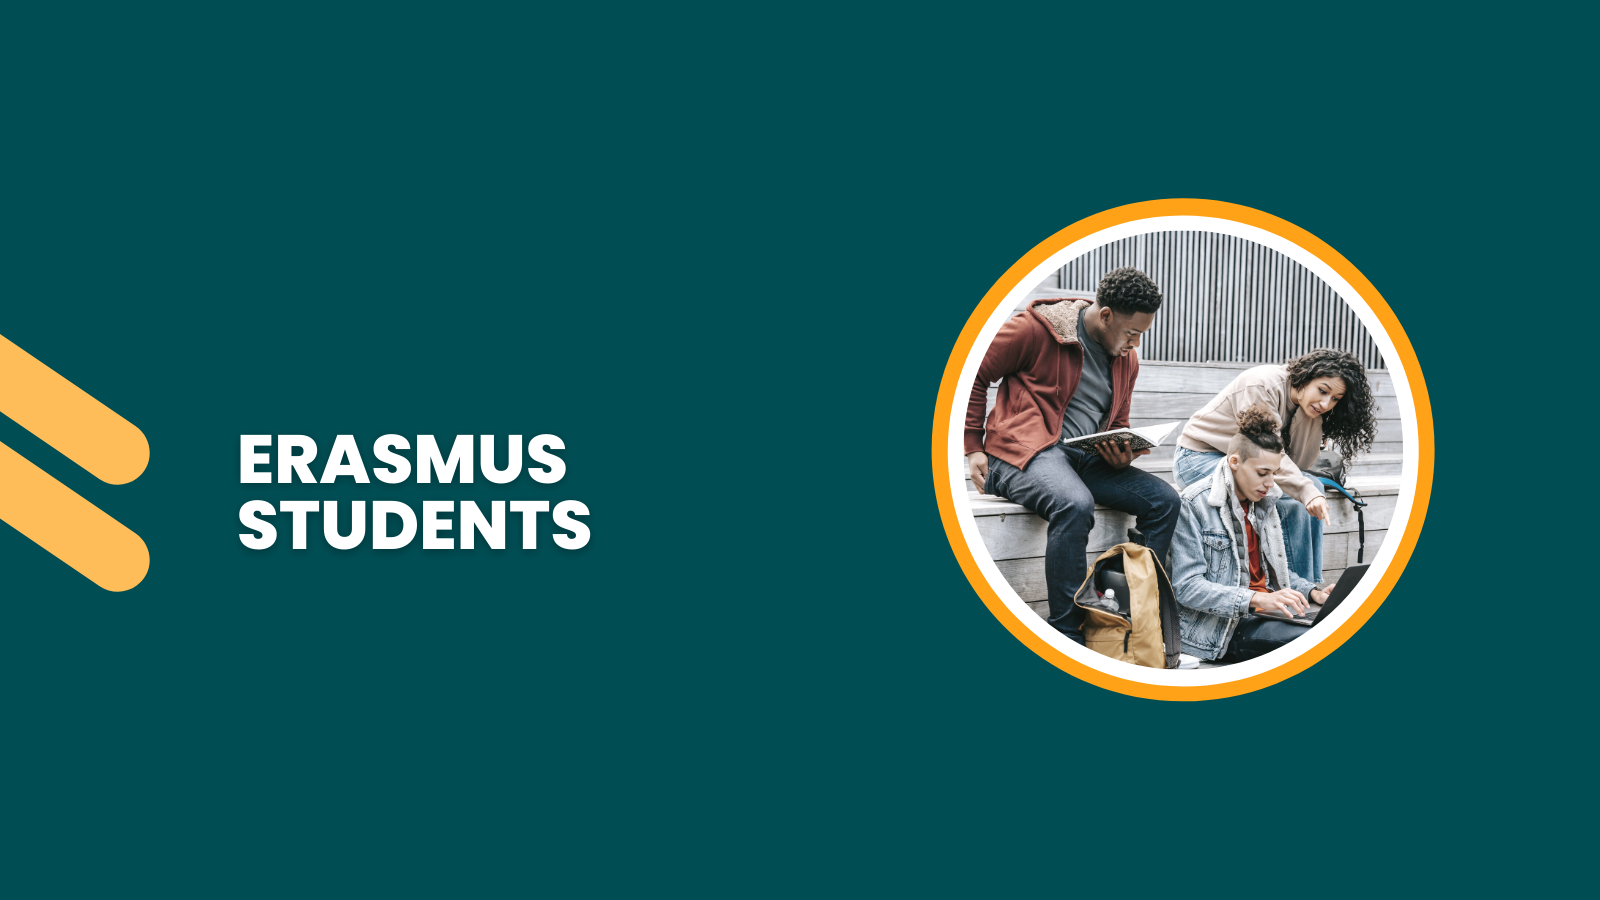 Erasmus students